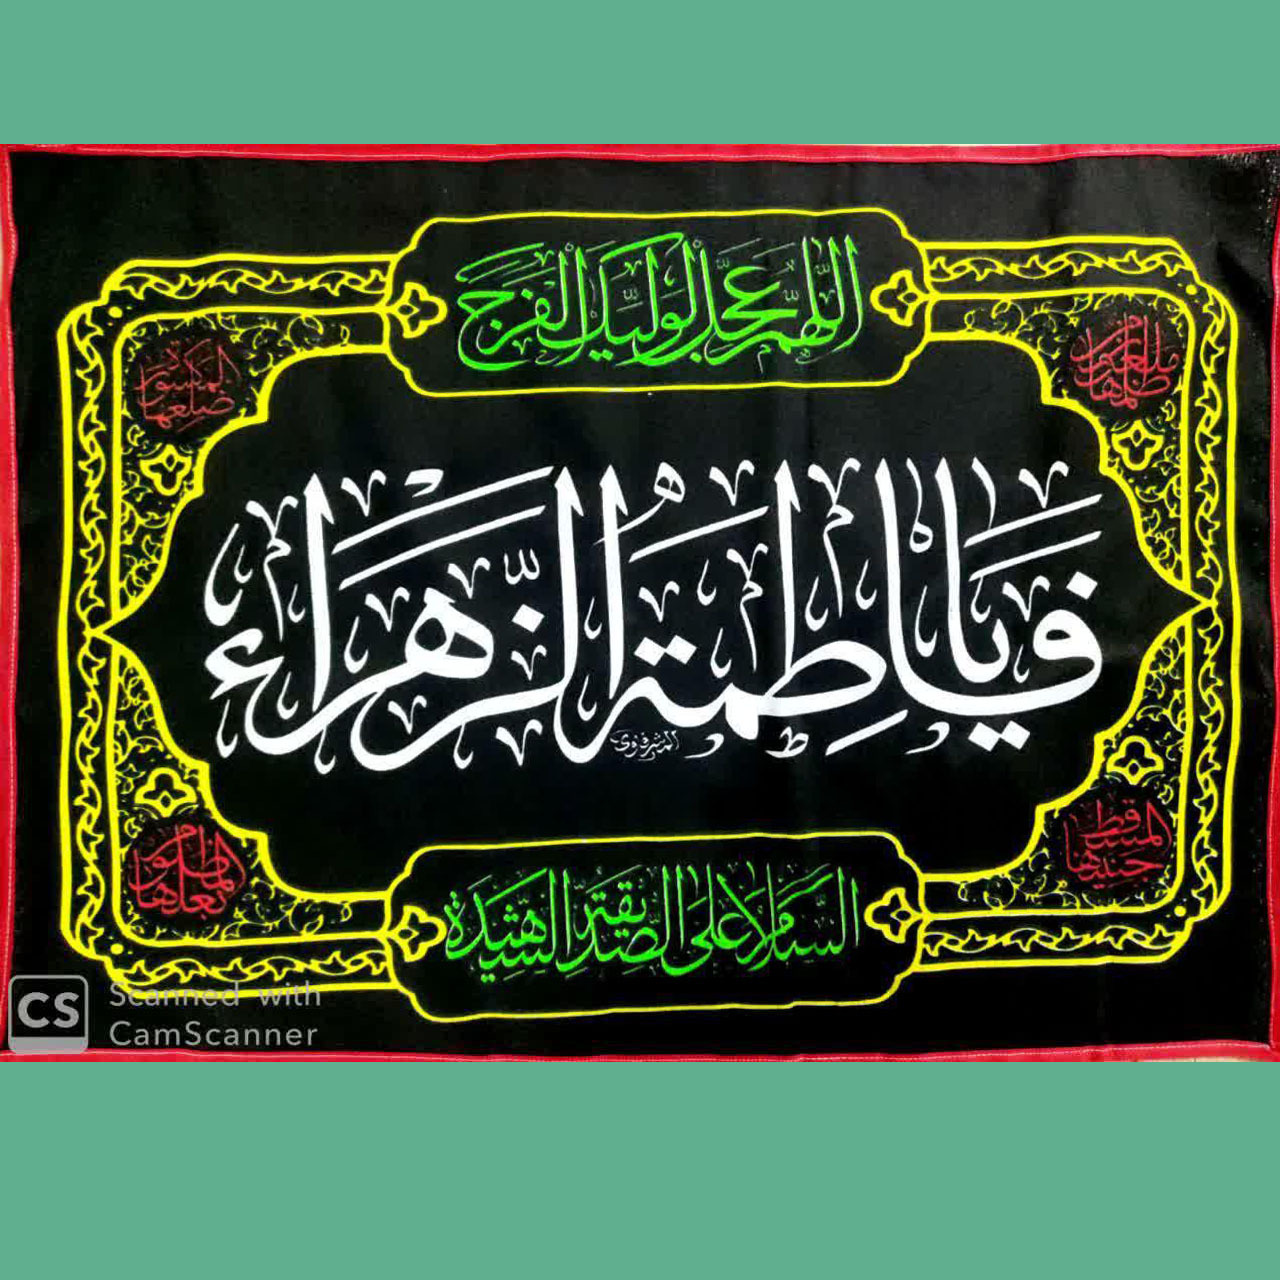 پرچم سر دری با موضوع شهادت حضرت زهرا سلام الله علیها(بسته دو تایی، عکس تزئینی است)